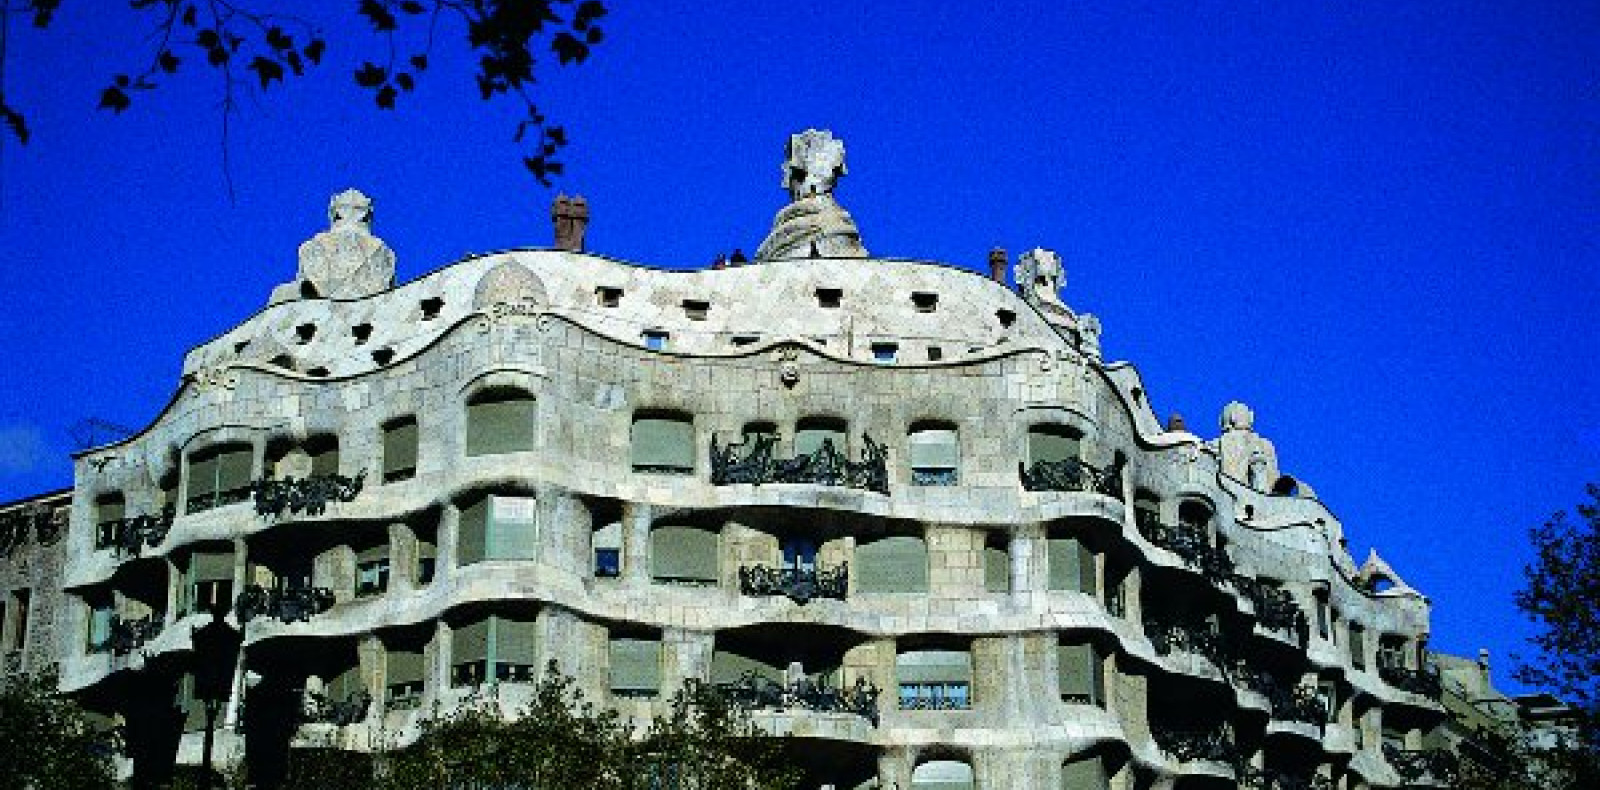 Barcelona: Casa Mila "La Pedrera"